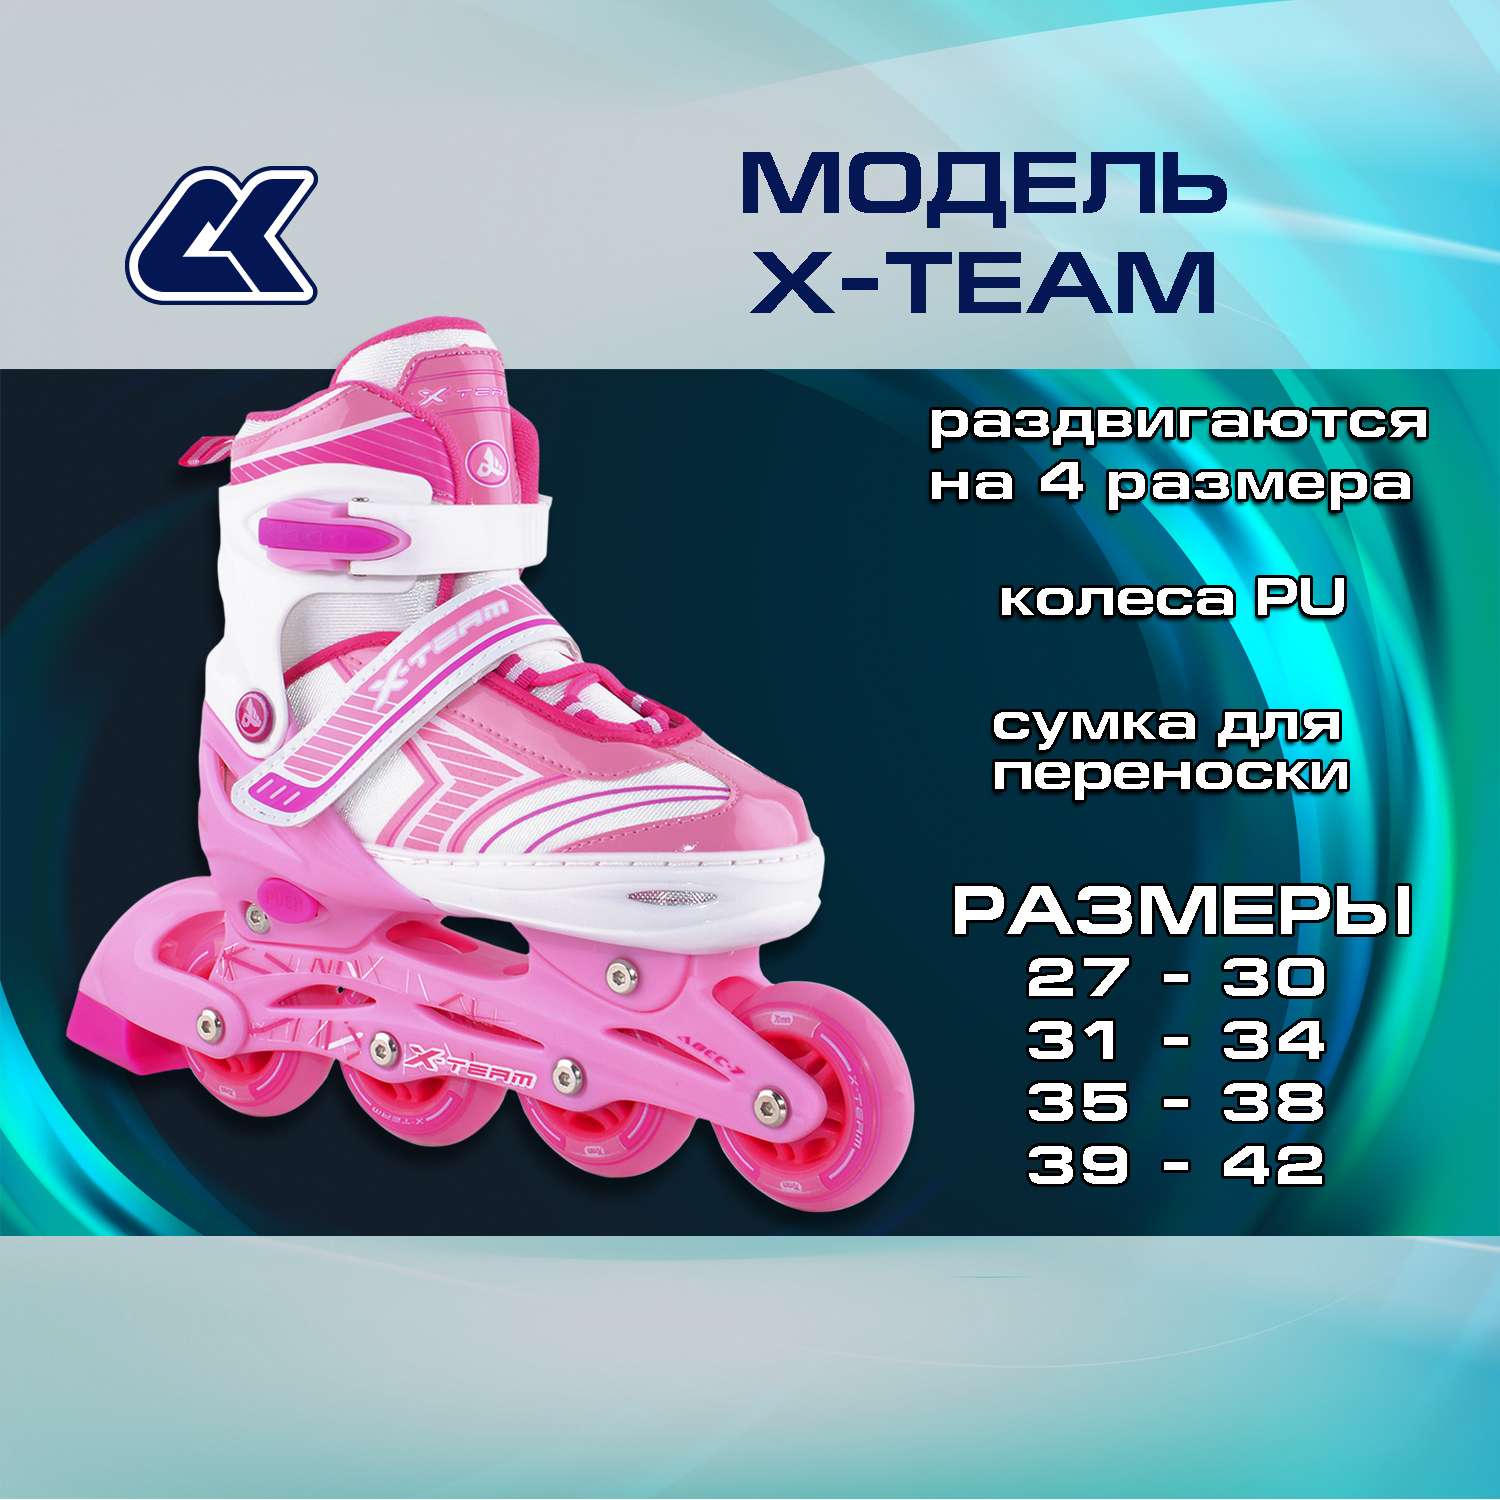 Раздвижные роликовые коньки Alpha Caprice X-Team pink размер S 31-34 - фото 2